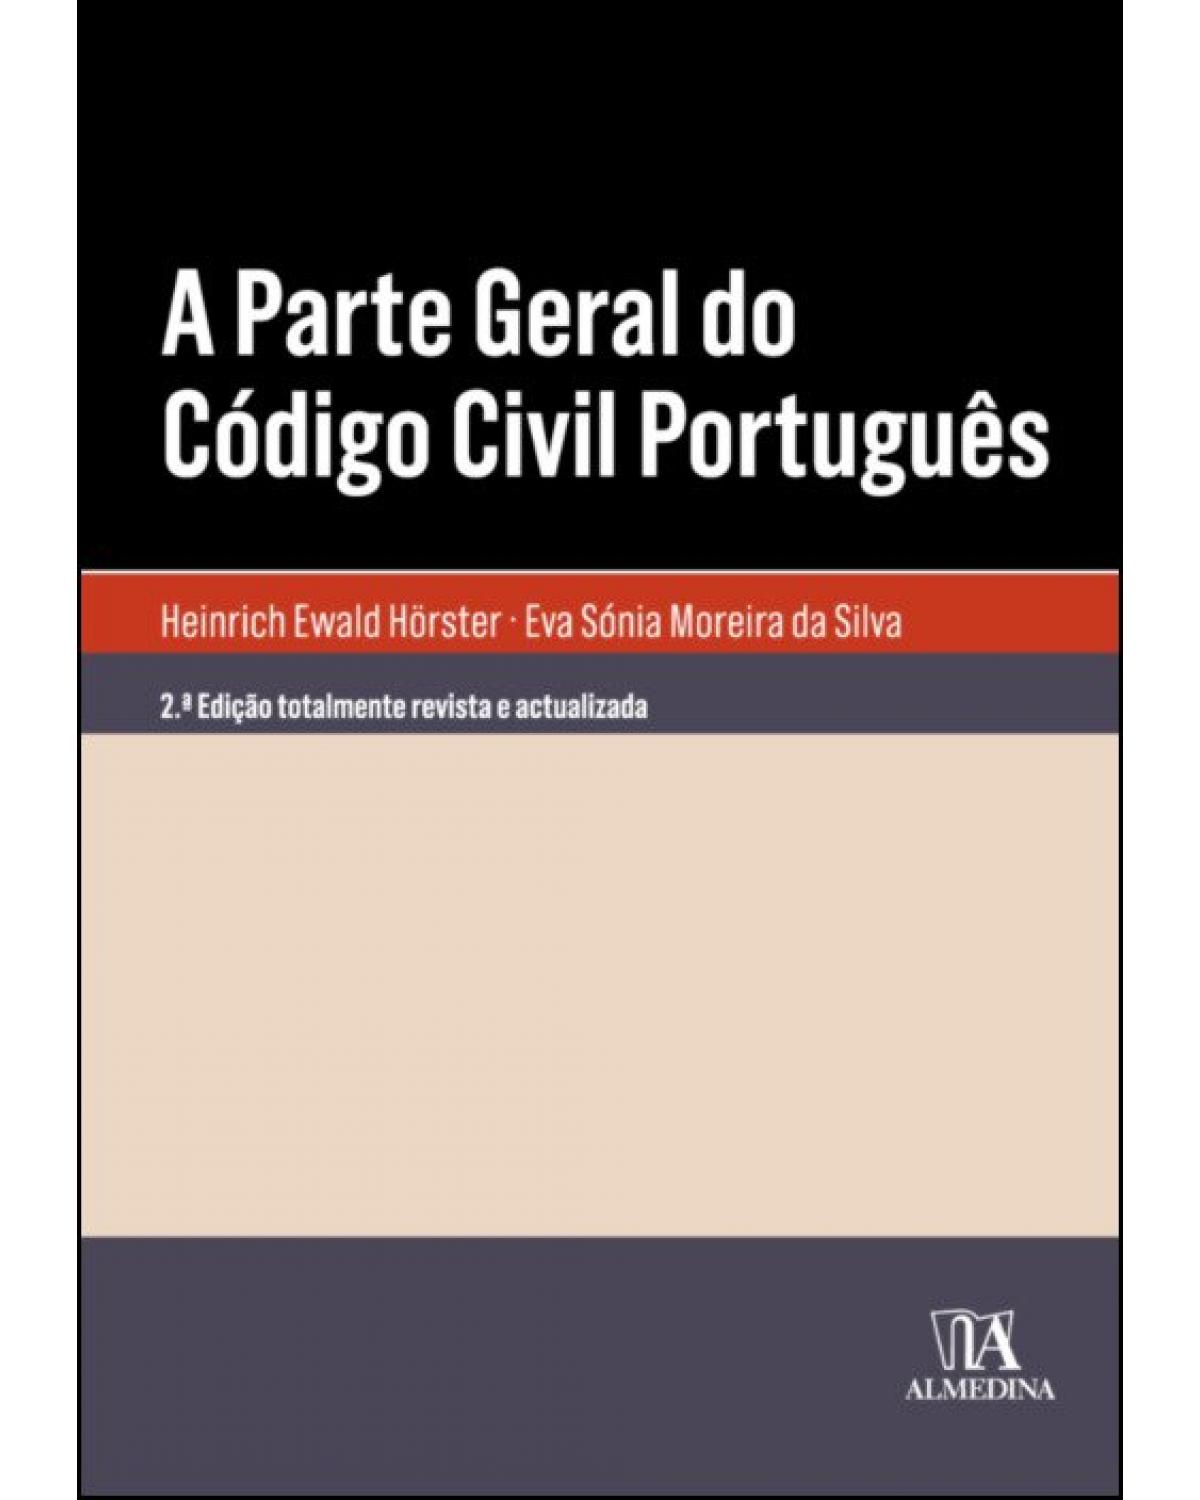 A parte geral do Código Civil Português - 2ª Edição | 2019